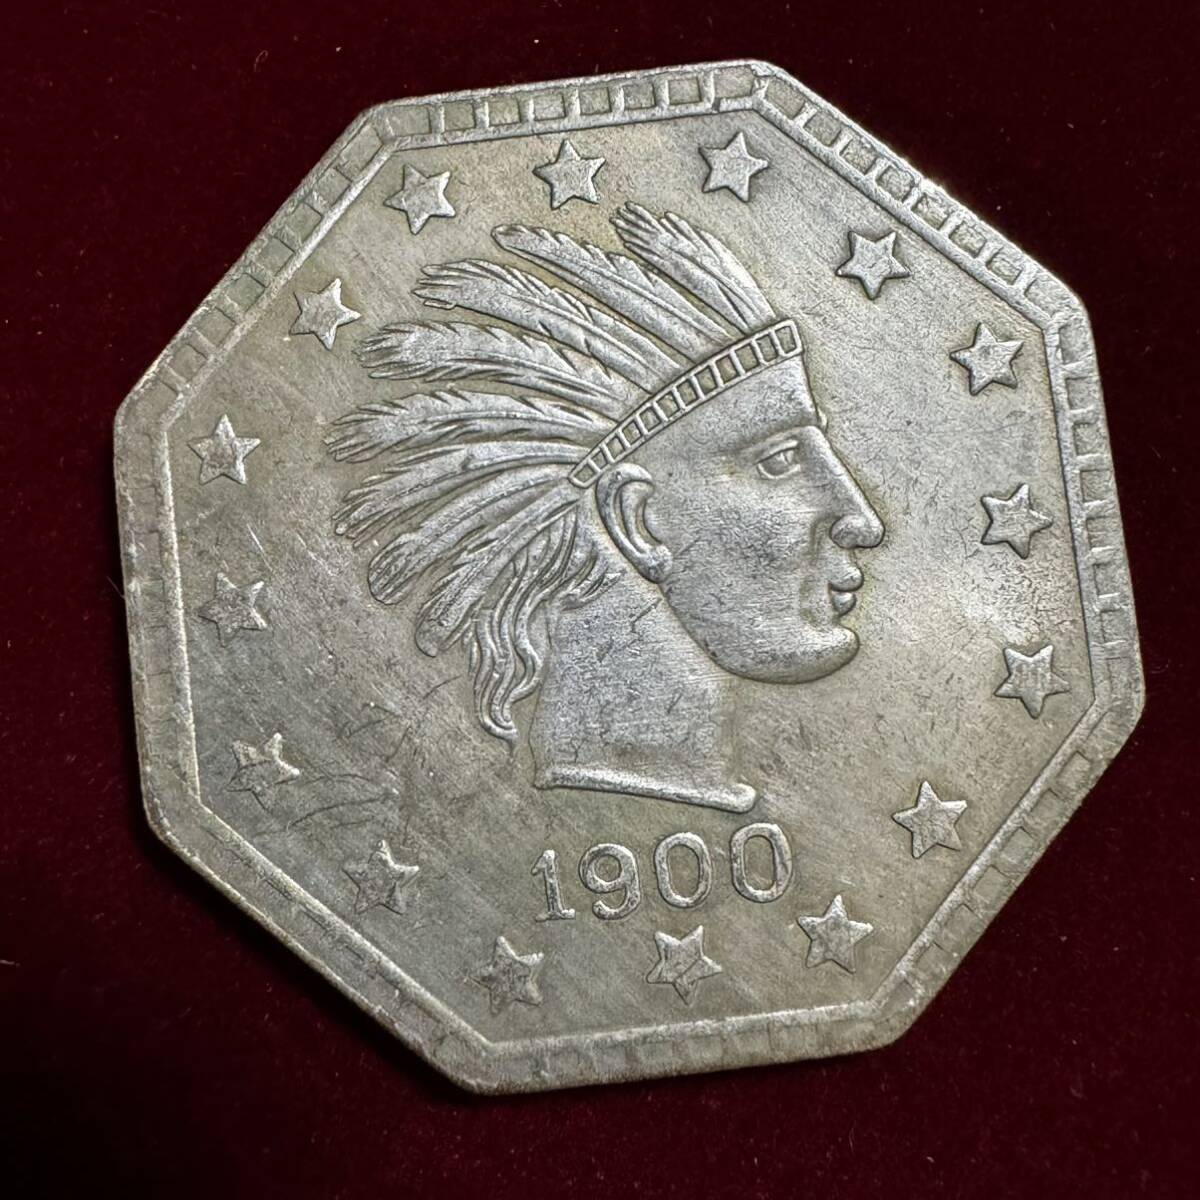 アメリカ 硬貨 古銭 インディアン人像 1900年 イーグル リバティ 八角形 ドル 記念幣 コイン 銀貨 外国古銭 海外硬貨_画像1